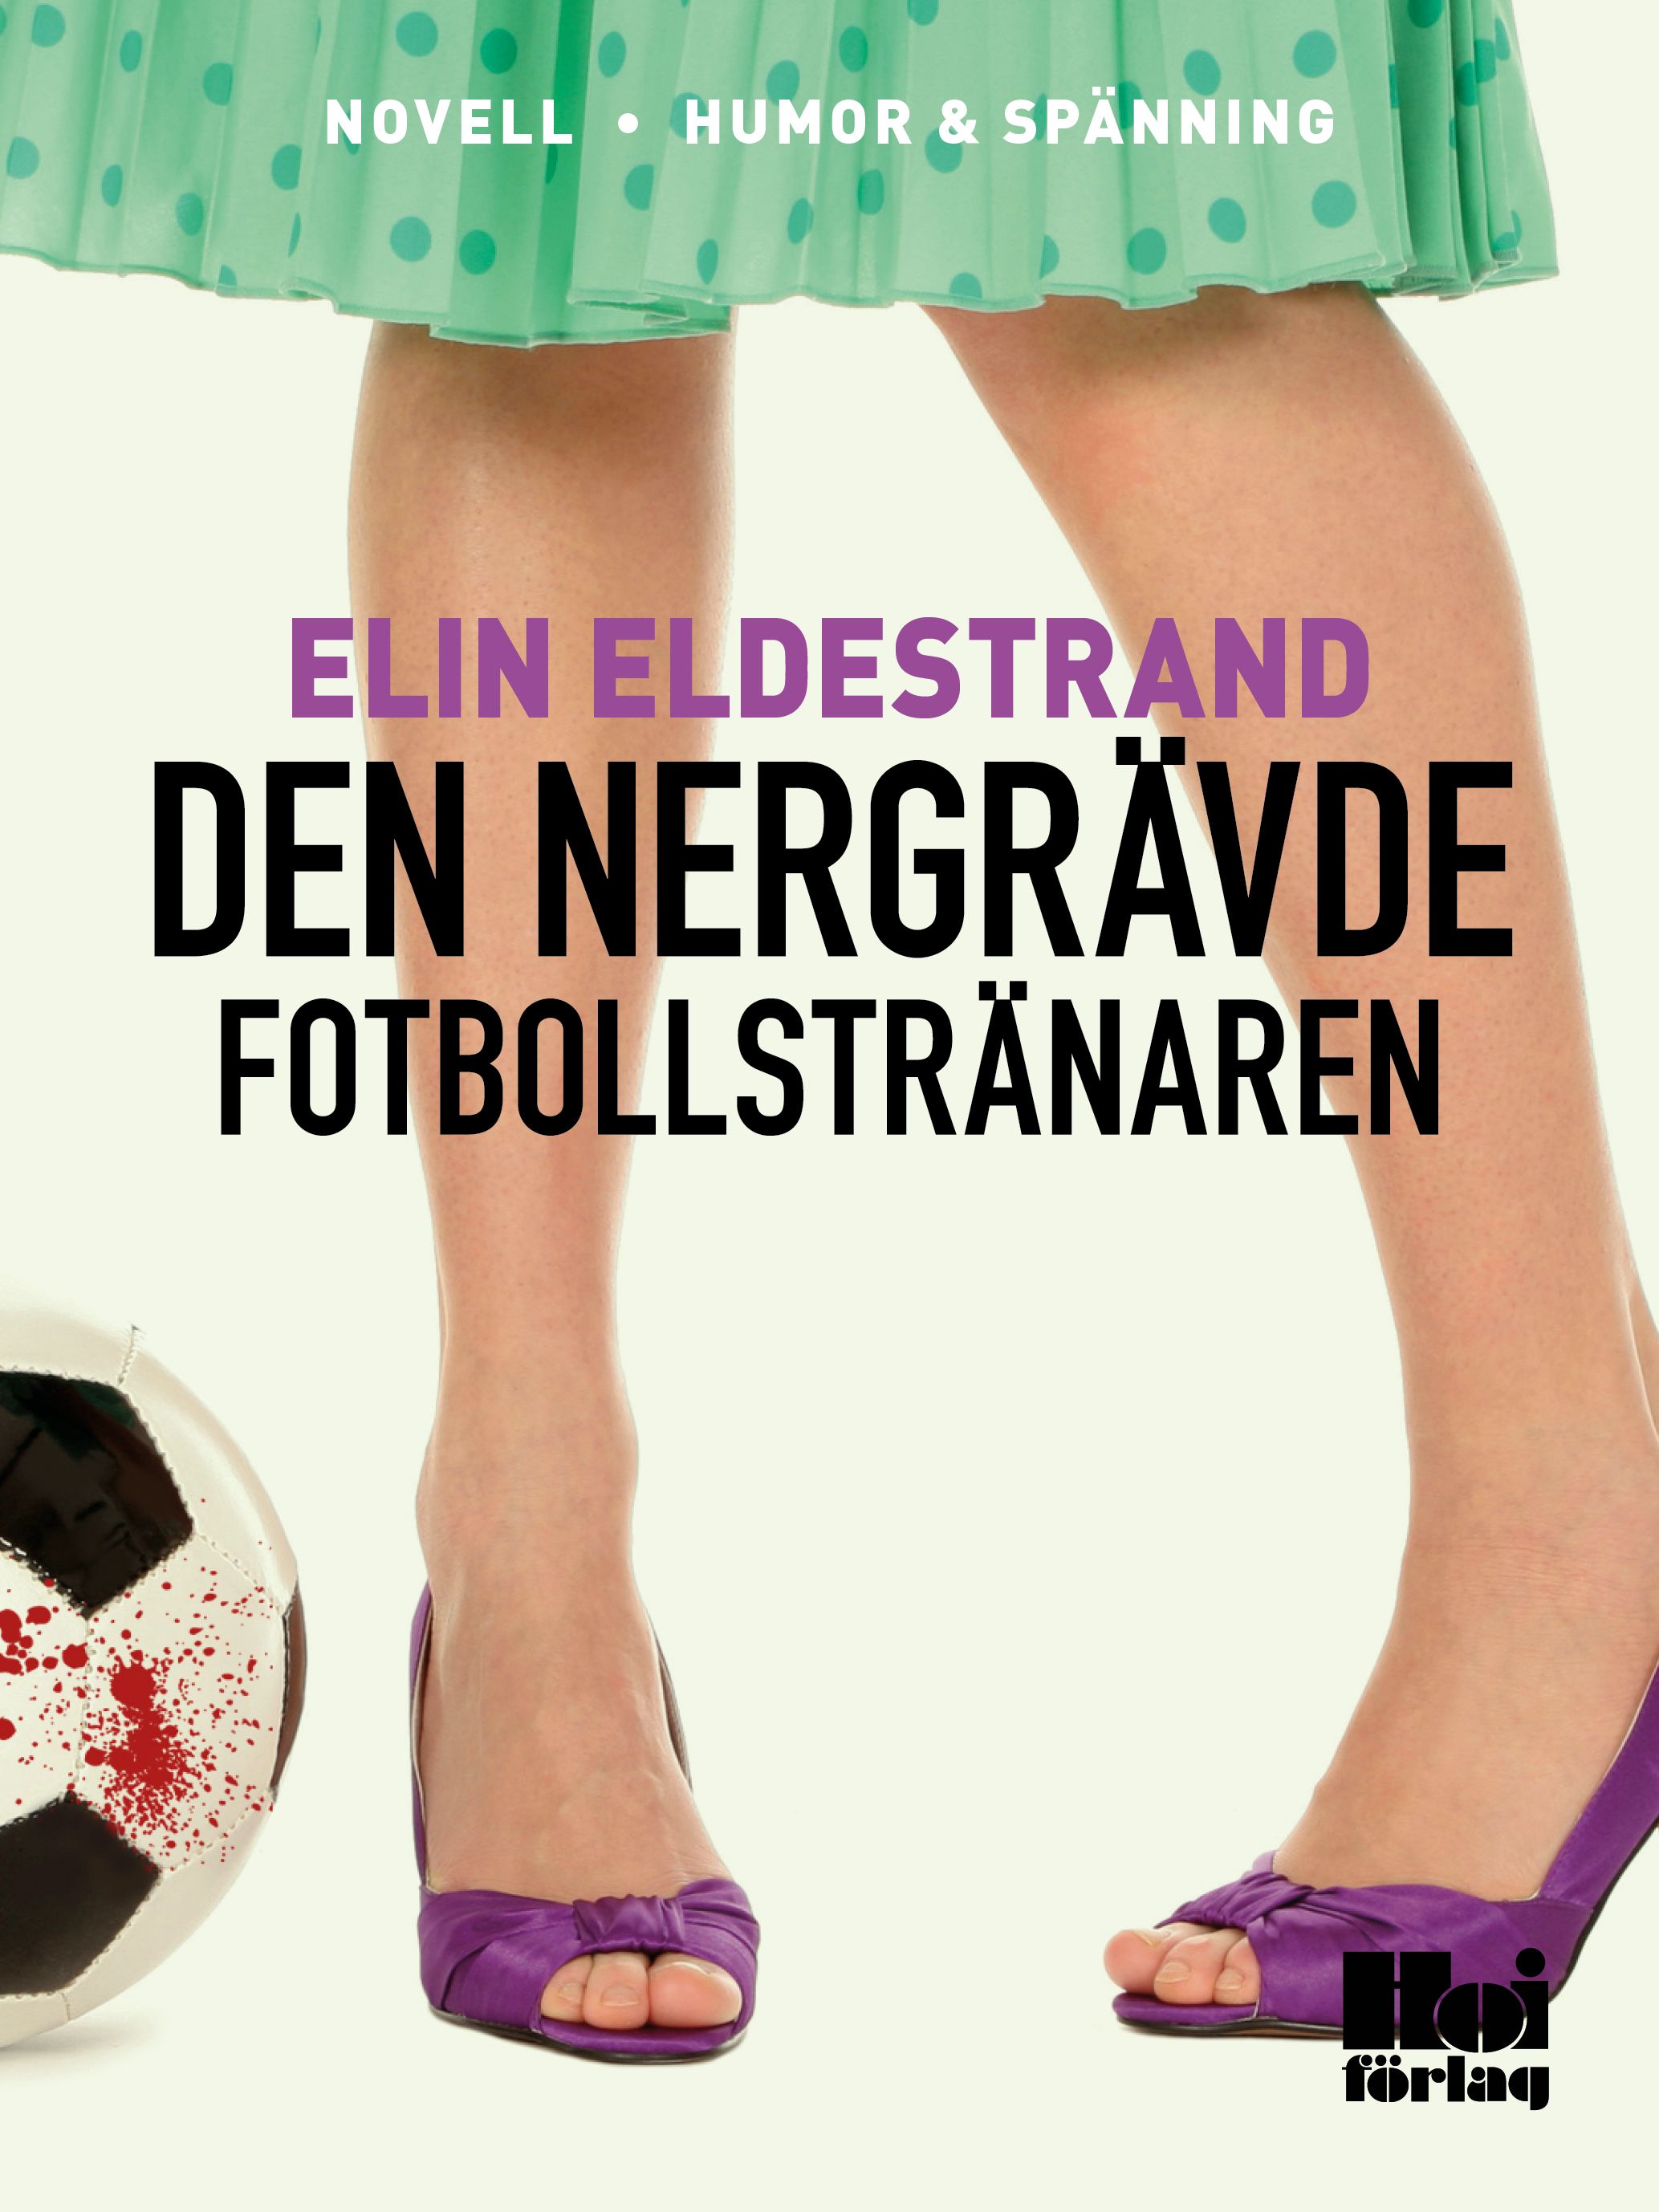 Den nergrävde fotbollstränaren, eBook by Elin Eldestrand